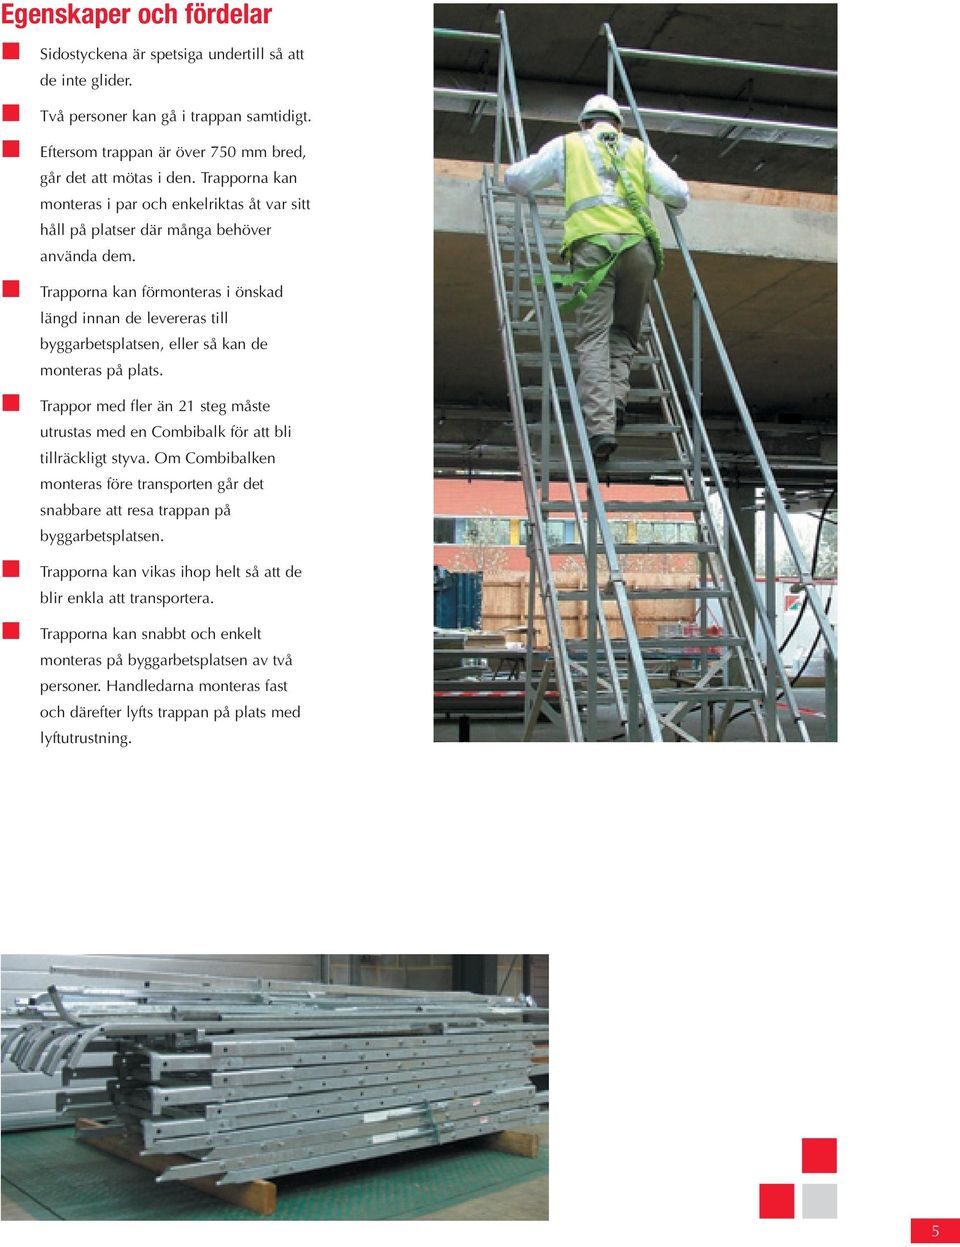 Trapporna kan förmonteras i önskad längd innan de levereras till byggarbetsplatsen, eller så kan de monteras på plats.